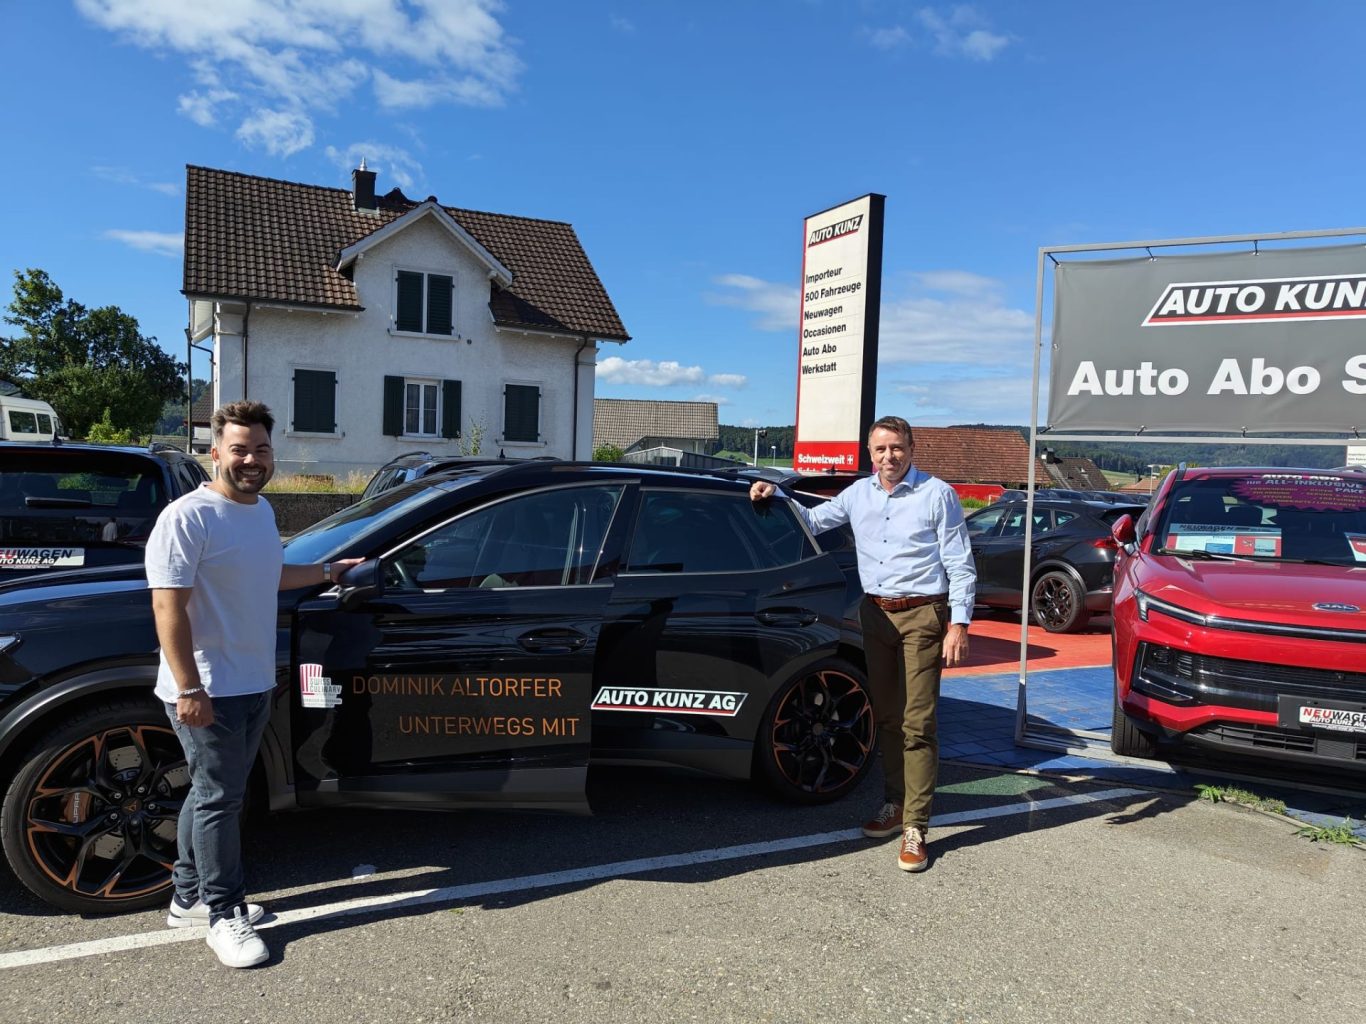 Star-Koch Dominik Altorfer kooperiert mit der Garage Auto Kunz AG in Wohlen - Auto Kunz AG mit den schweizweit tiefsten Preisen